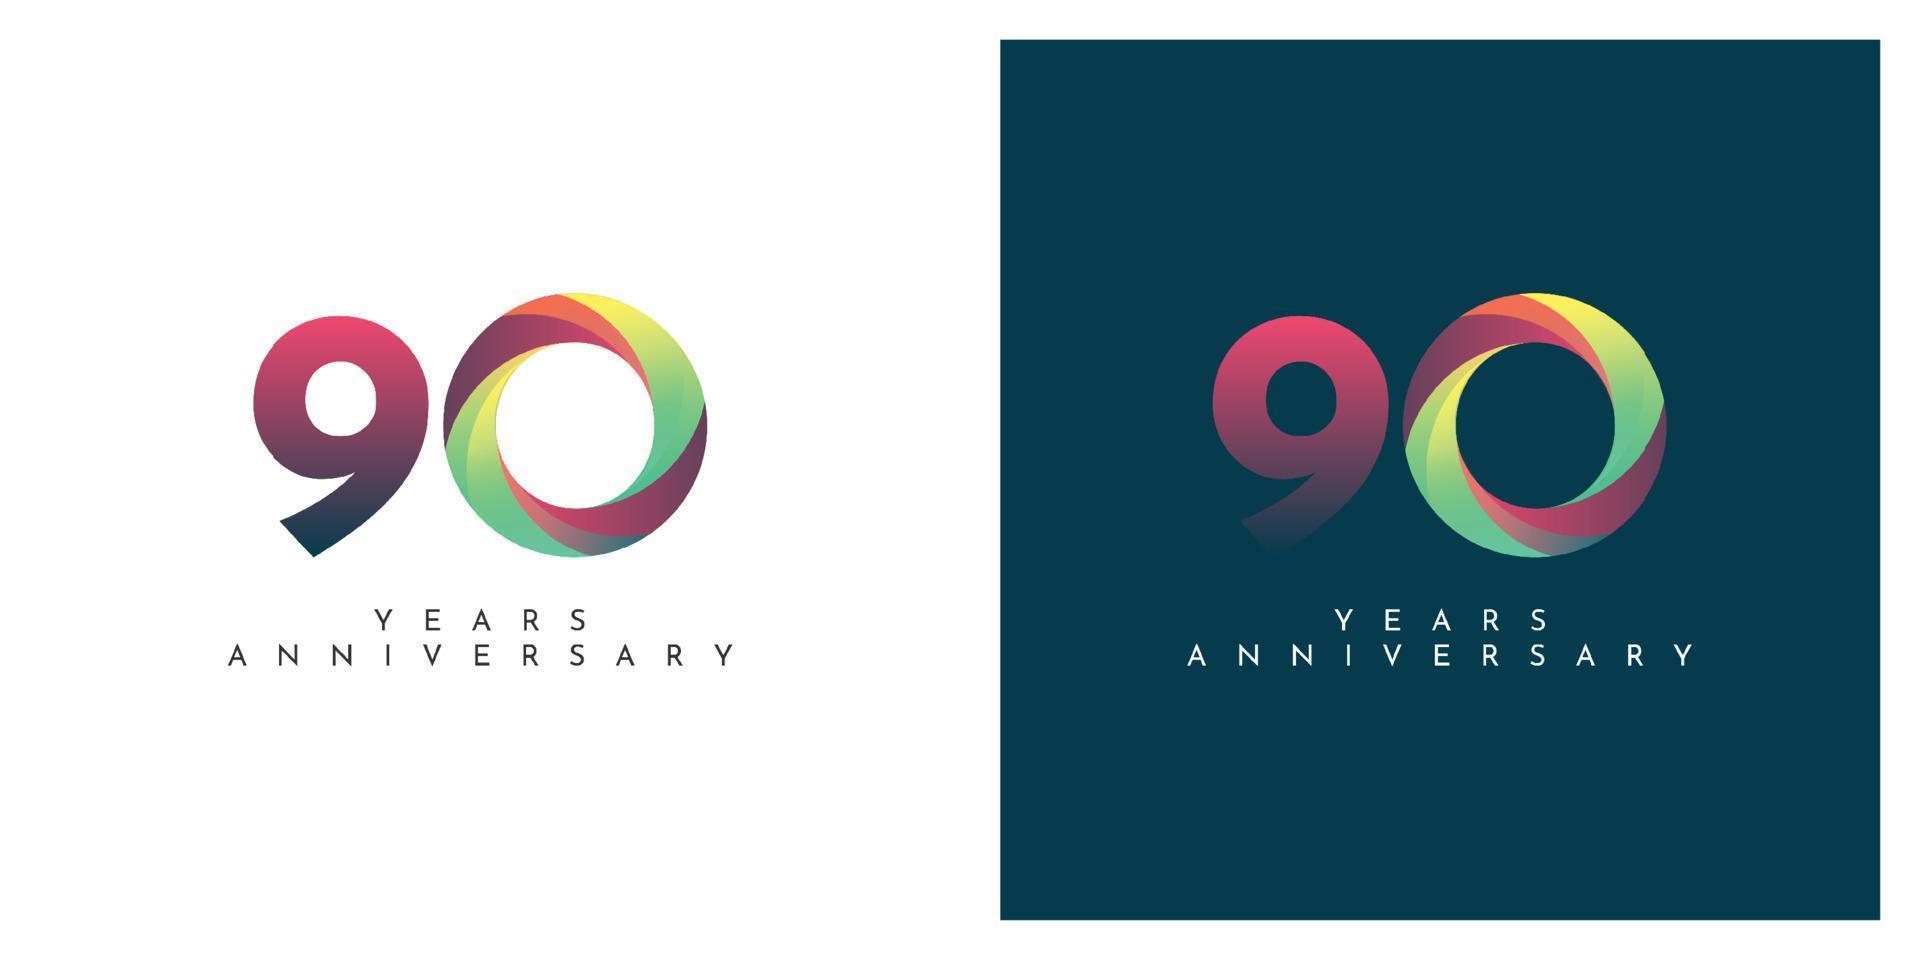 Diseño abstracto colorido de aniversario de 90 años. vector